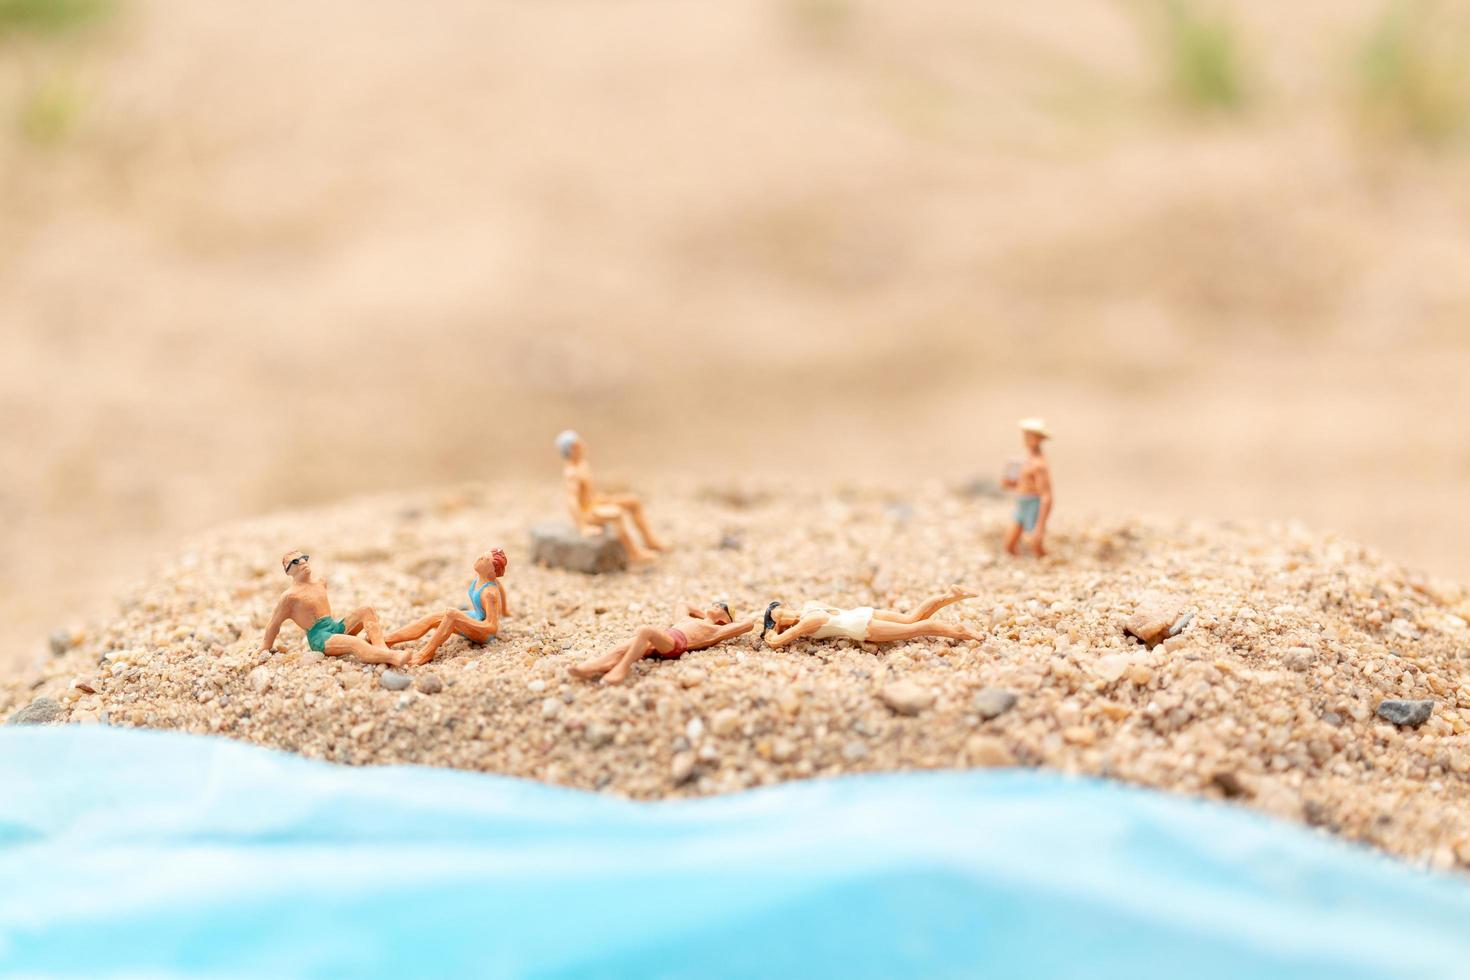 miniatyrfolk som bär baddräkter som kopplar av på en strand, sommarbegrepp foto